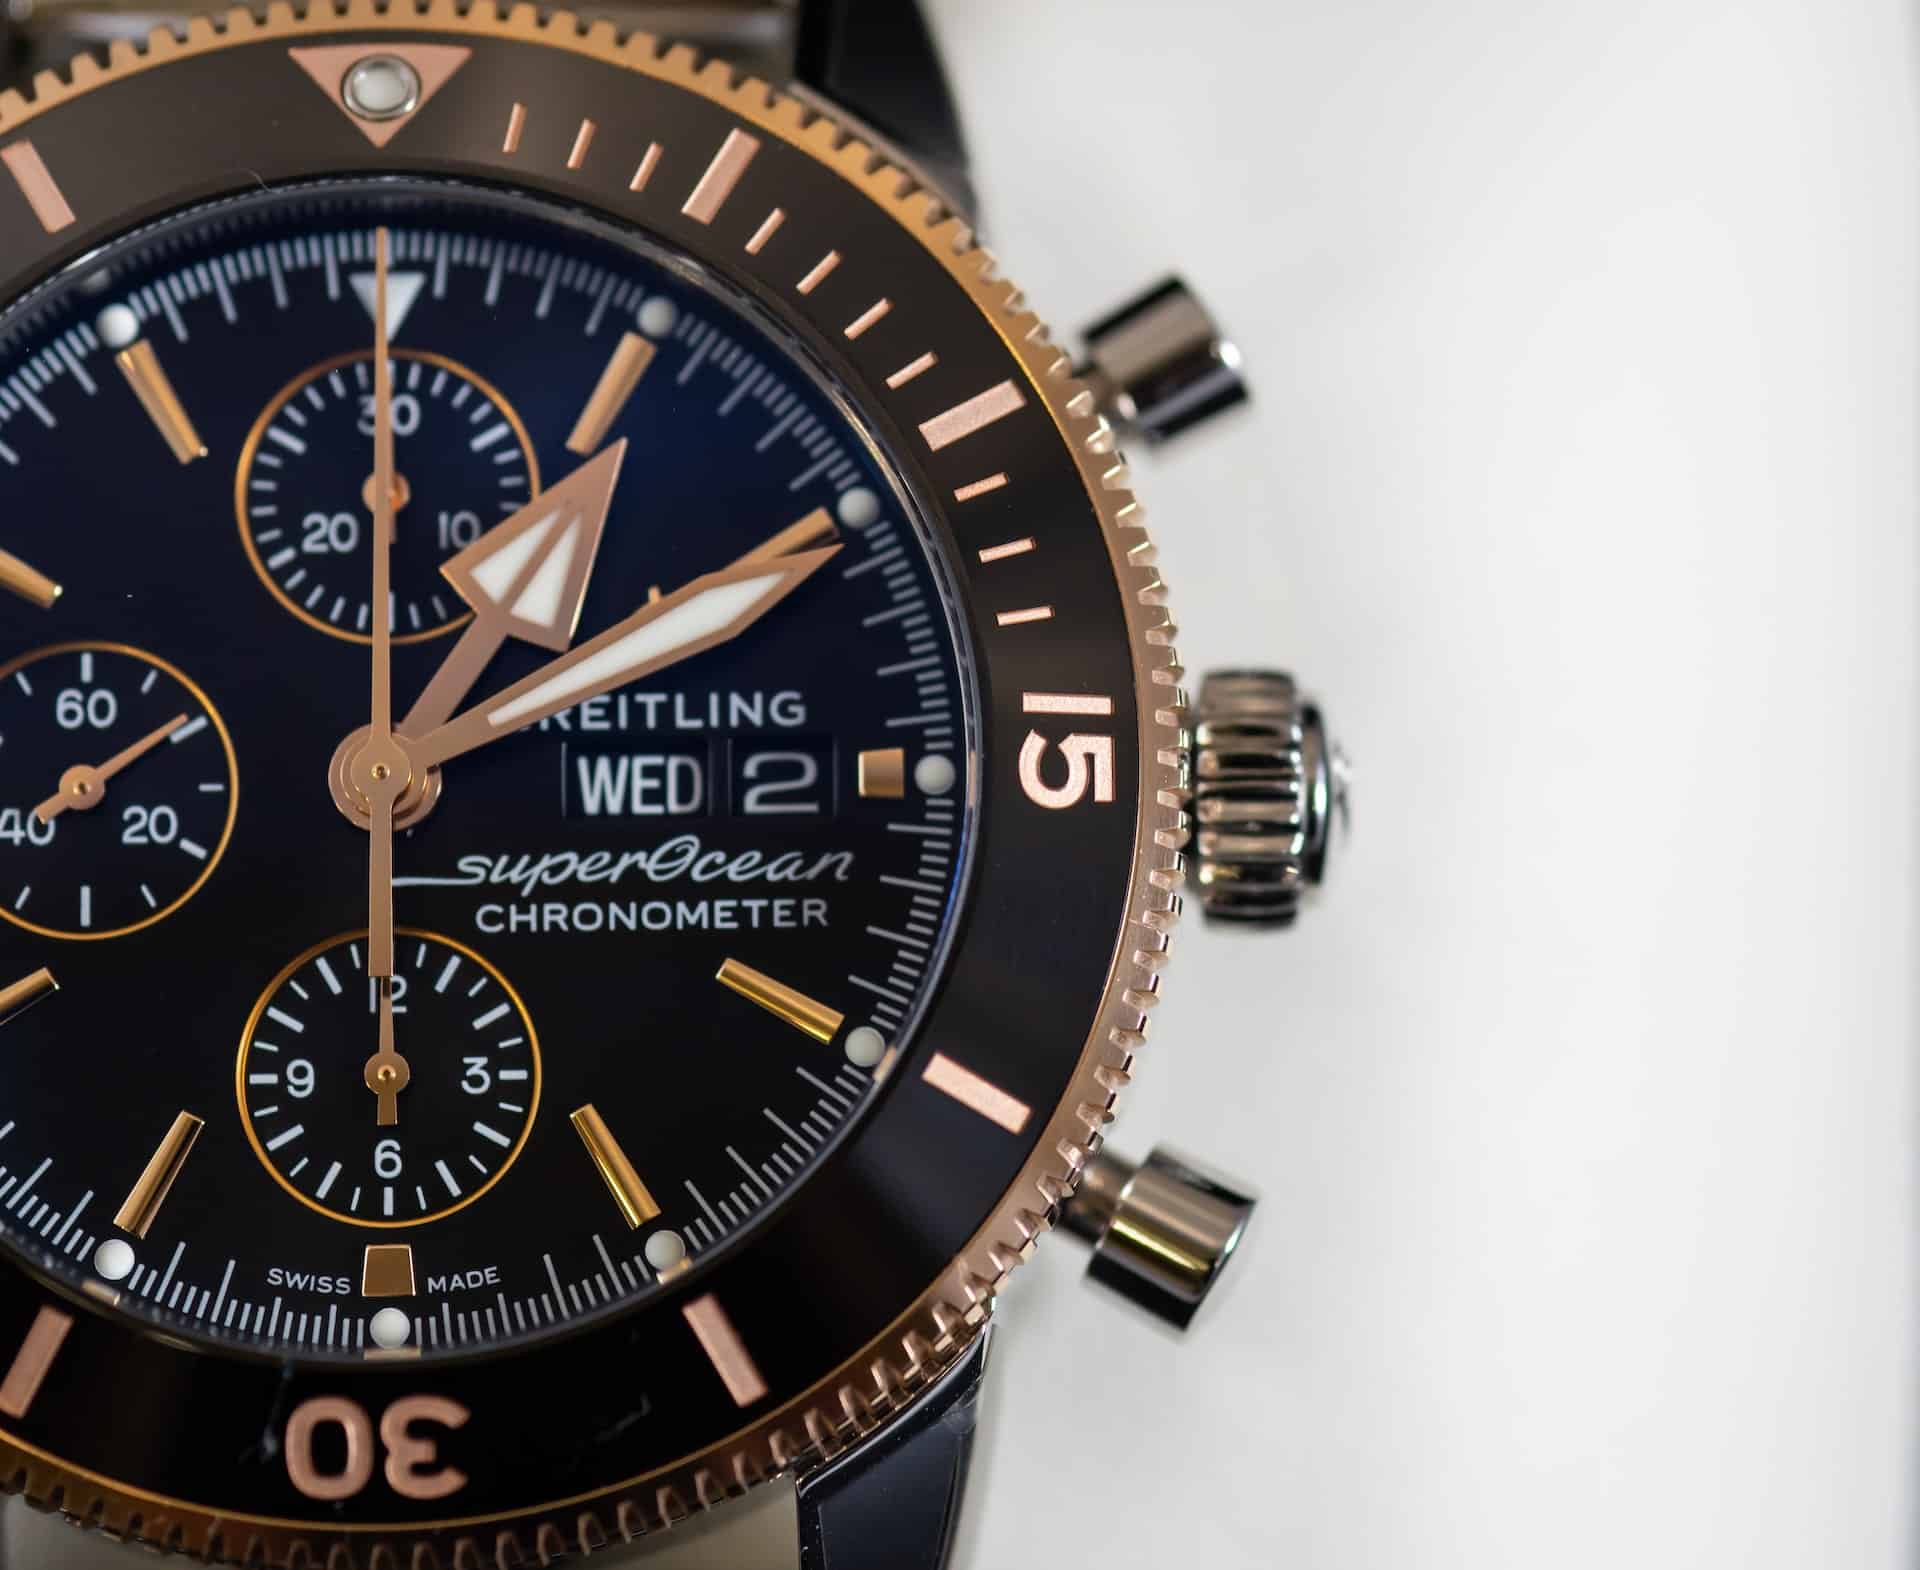 5 populairste horloge modellen van Breitling